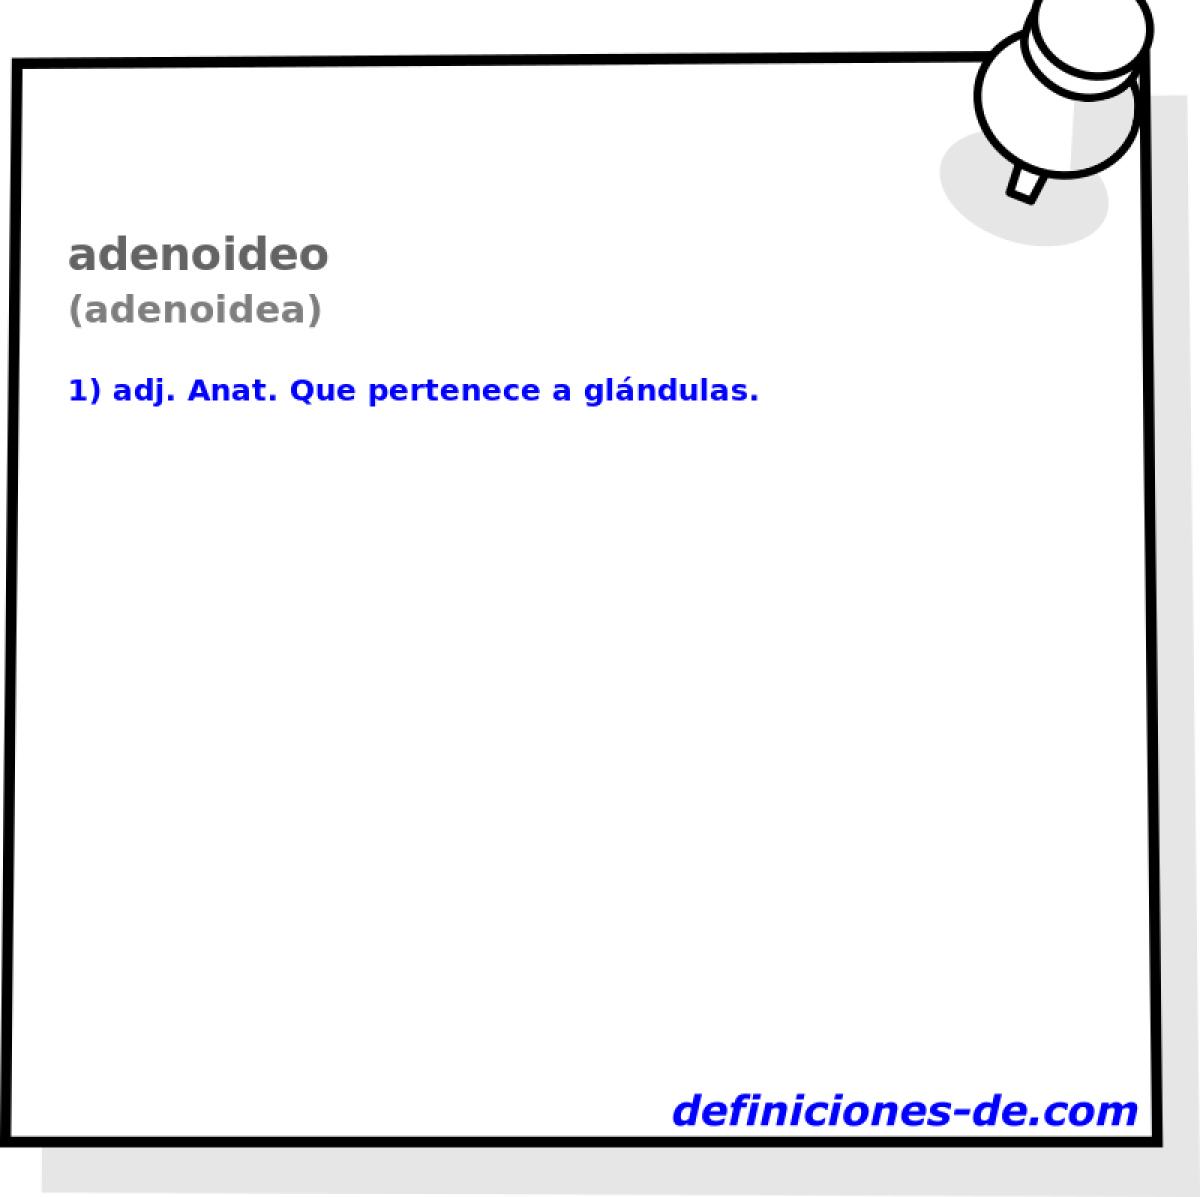 adenoideo (adenoidea)